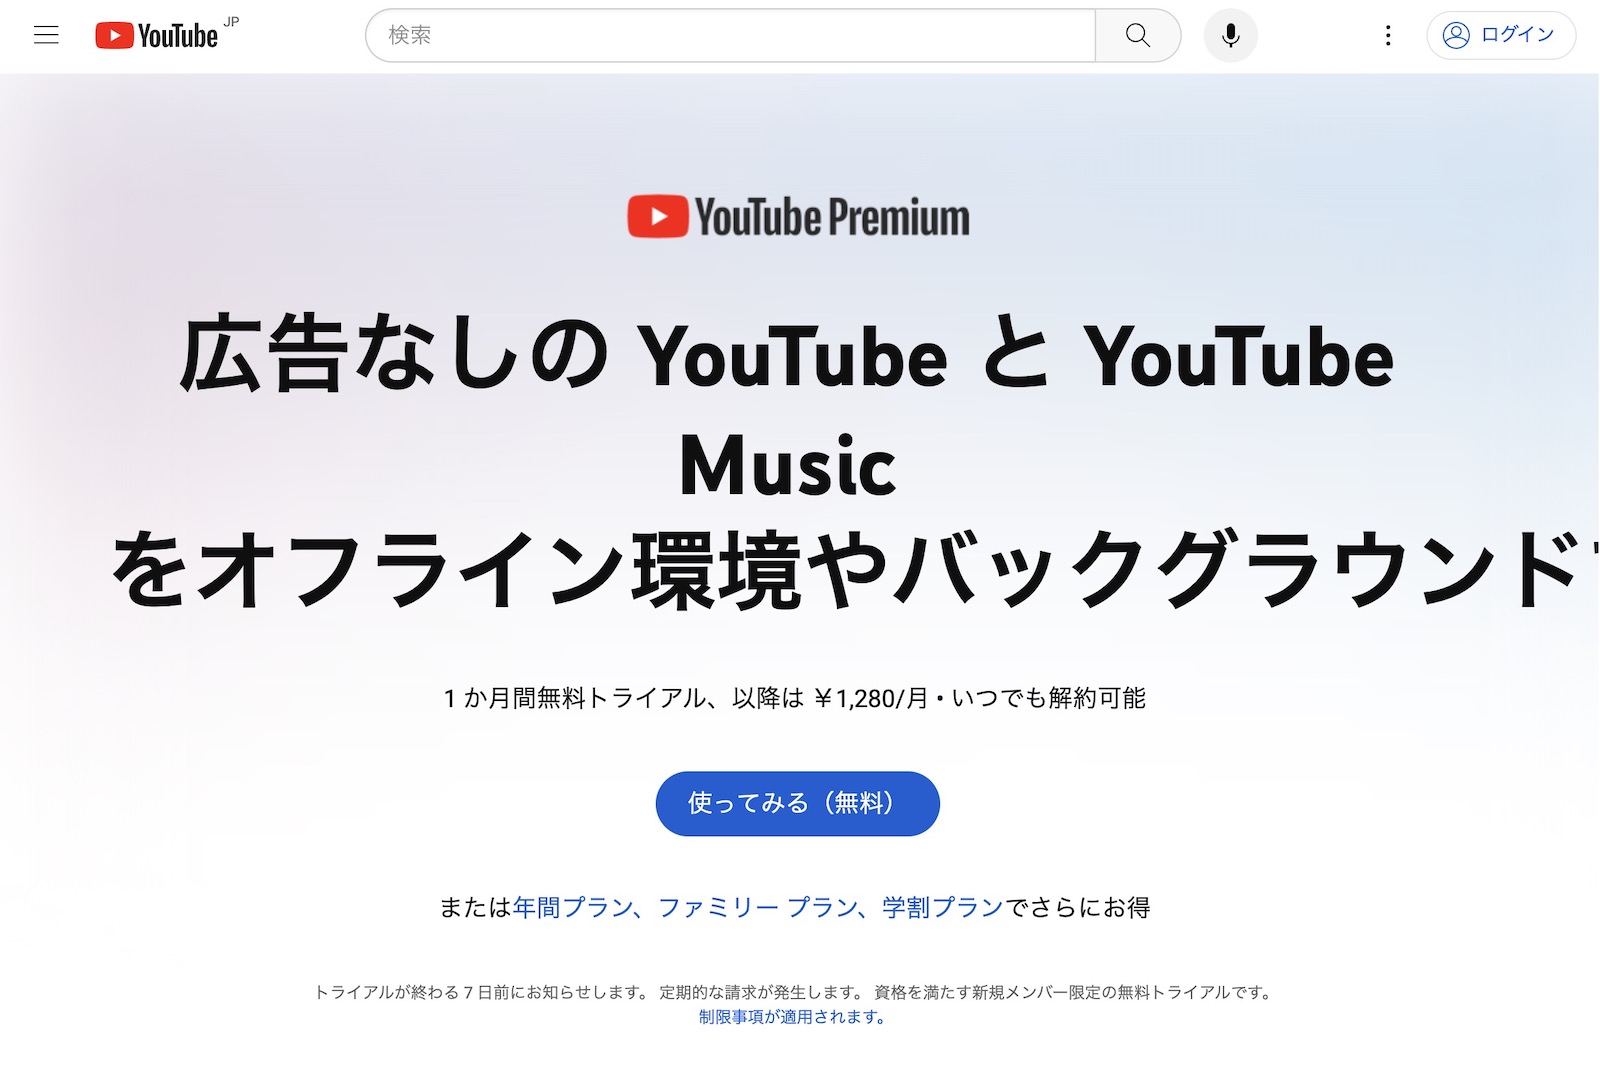 YouTube Premium Price Raise in Japan